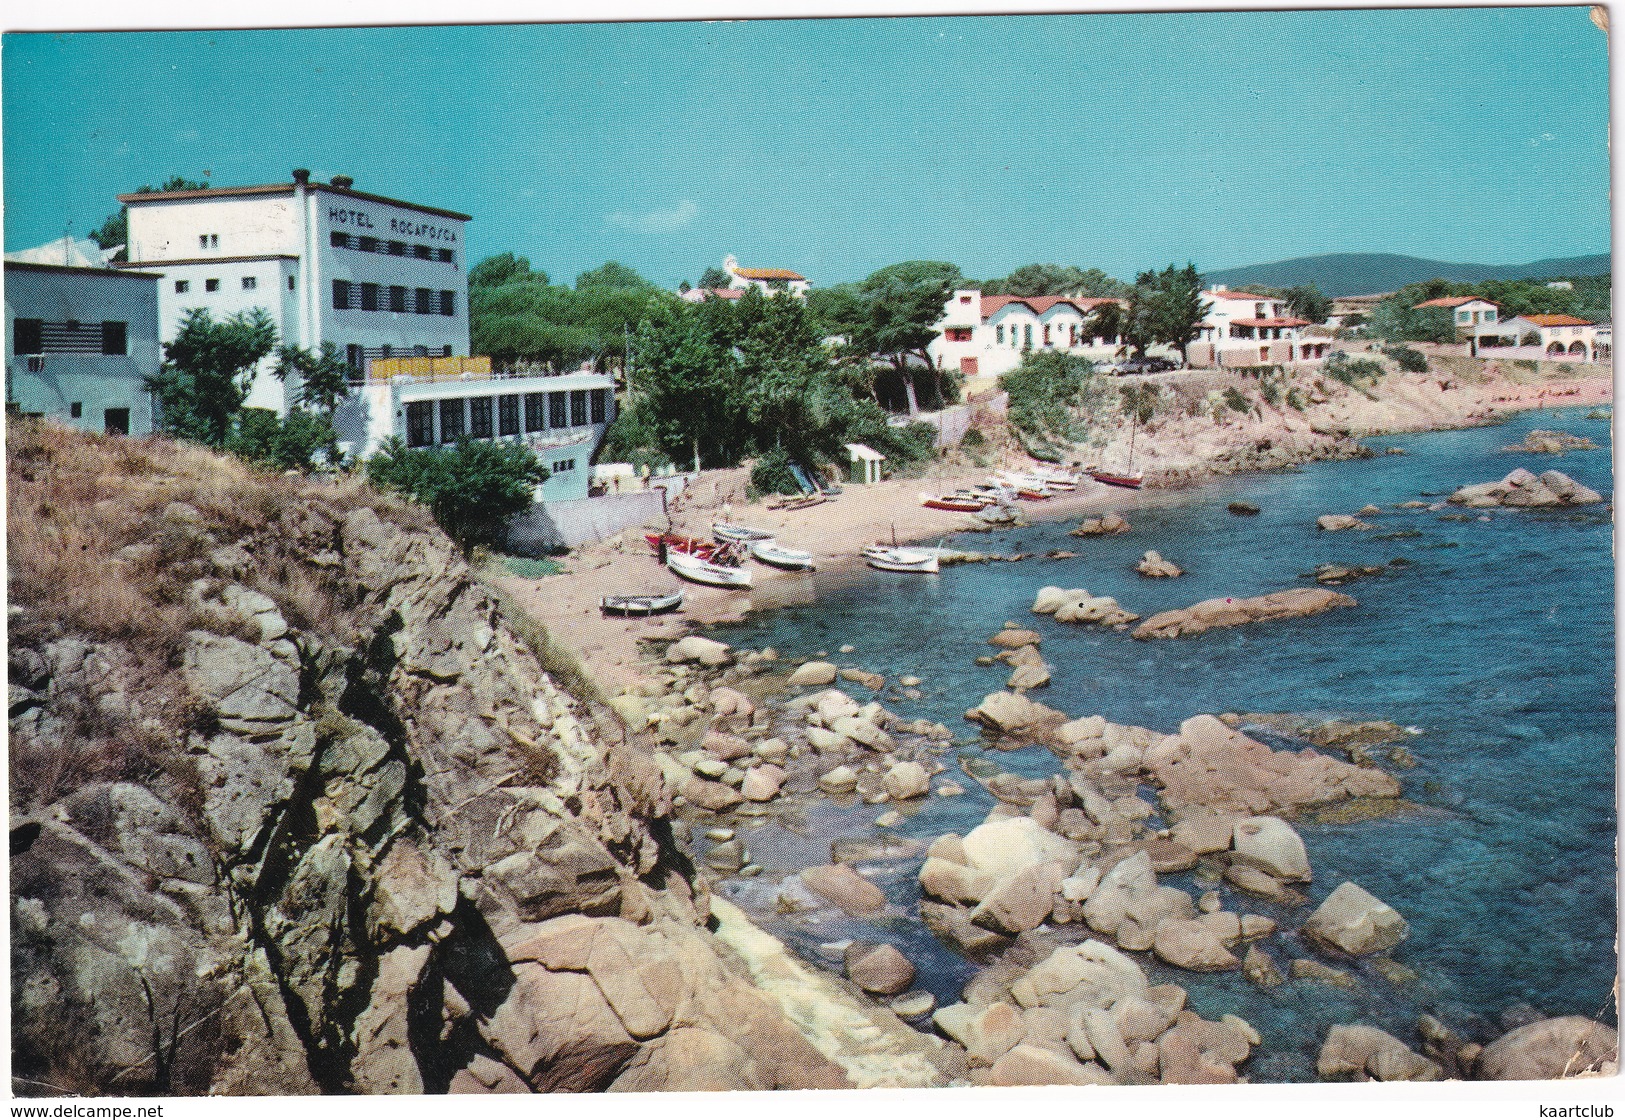 Palamos - Hotel 'Rocafosca' , La Fosca, Vista Parcial - (Costa Brava, Espana) - 1963 - Gerona